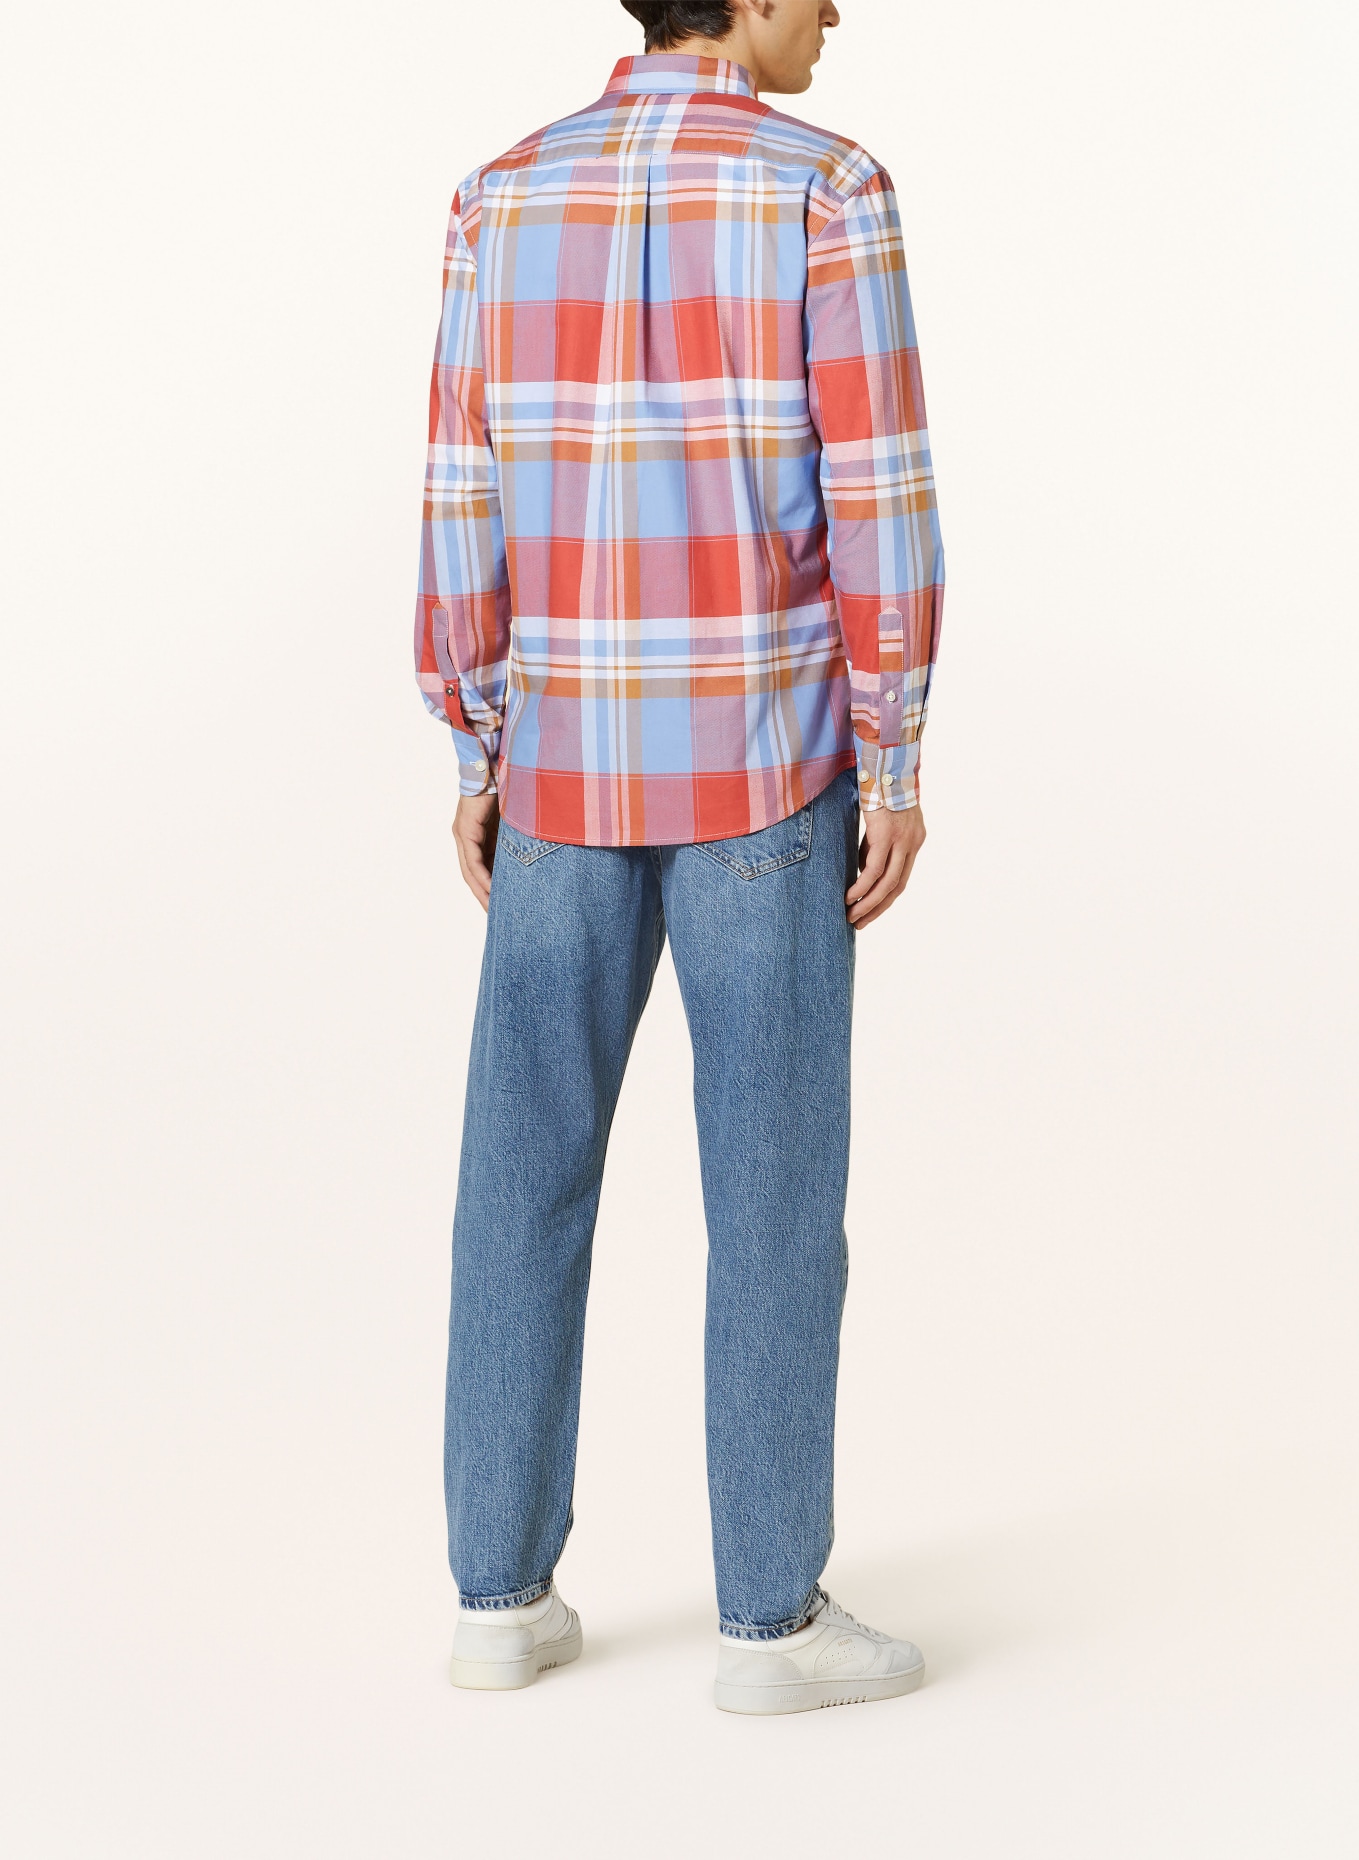 FYNCH-HATTON Shirt regular fit, Color: DARK ORANGE/ LIGHT BLUE/ LIGHT BROWN (Image 3)